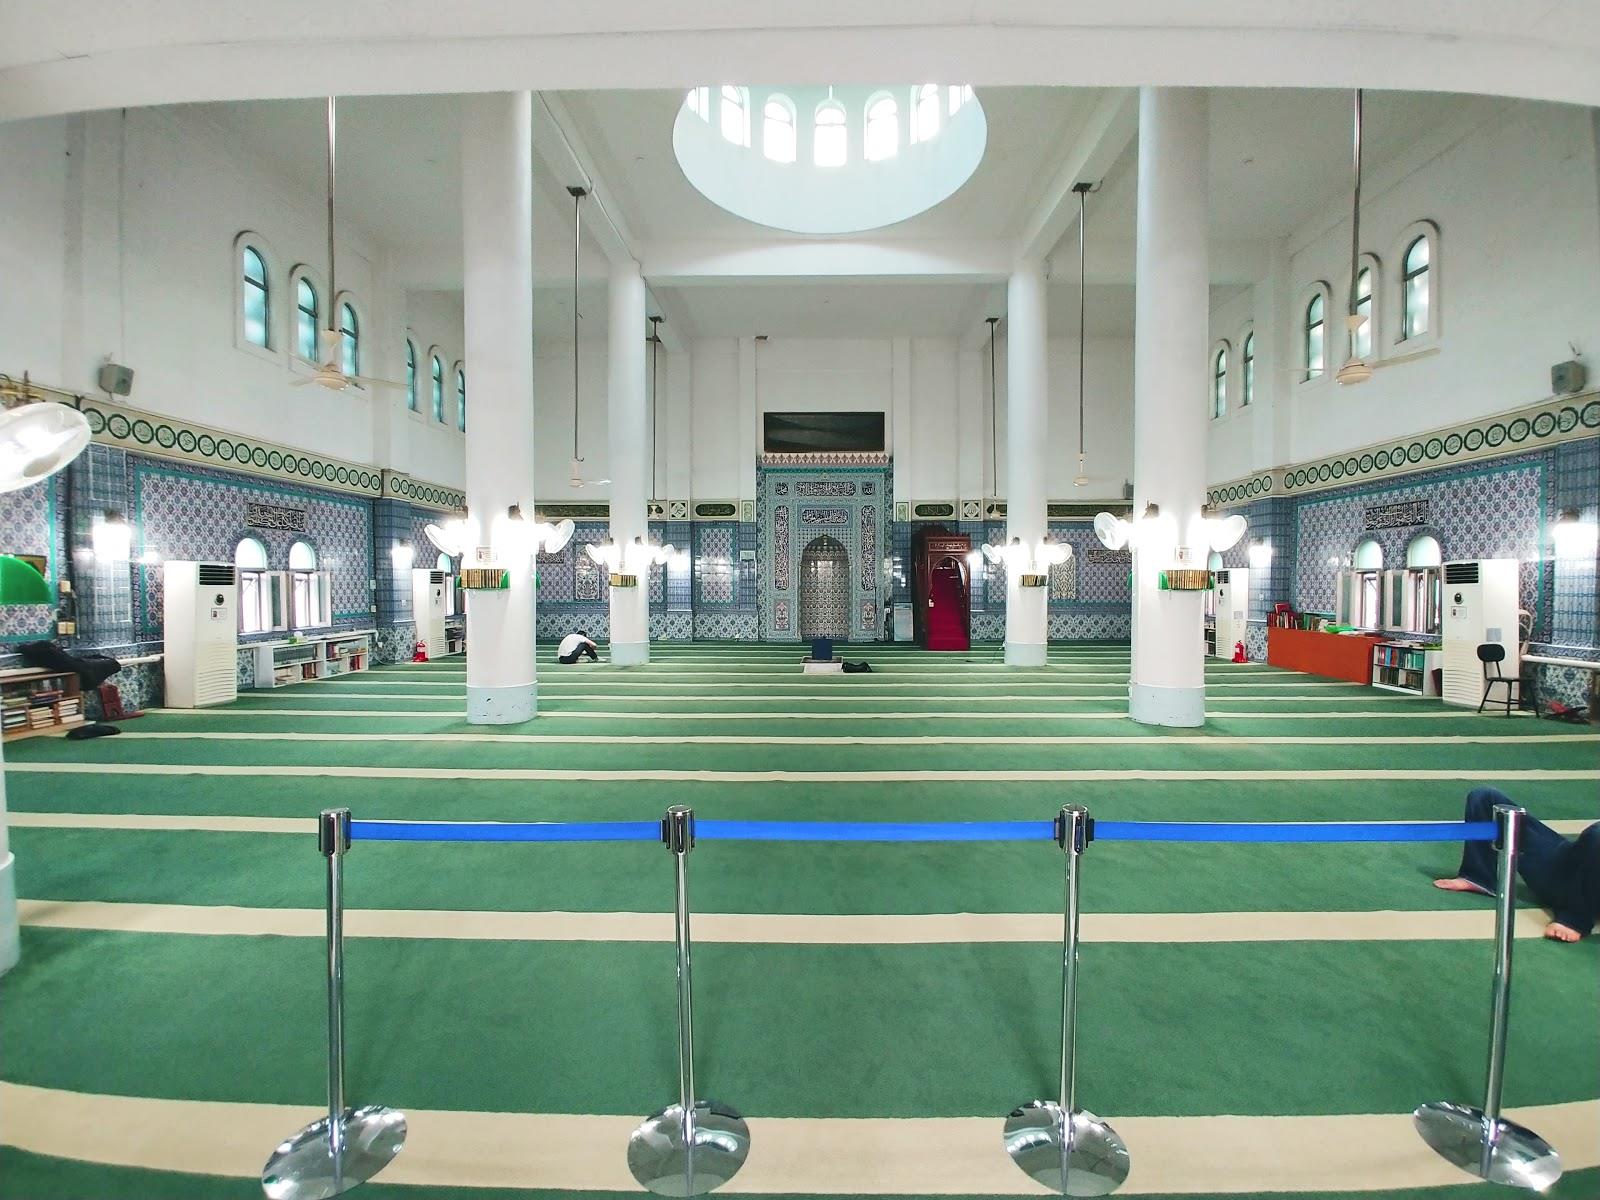 مسجد مرکزی سئول کره جنوبی؛ مروج مدارا و تقویت ارتباط بین پیروان ادیان